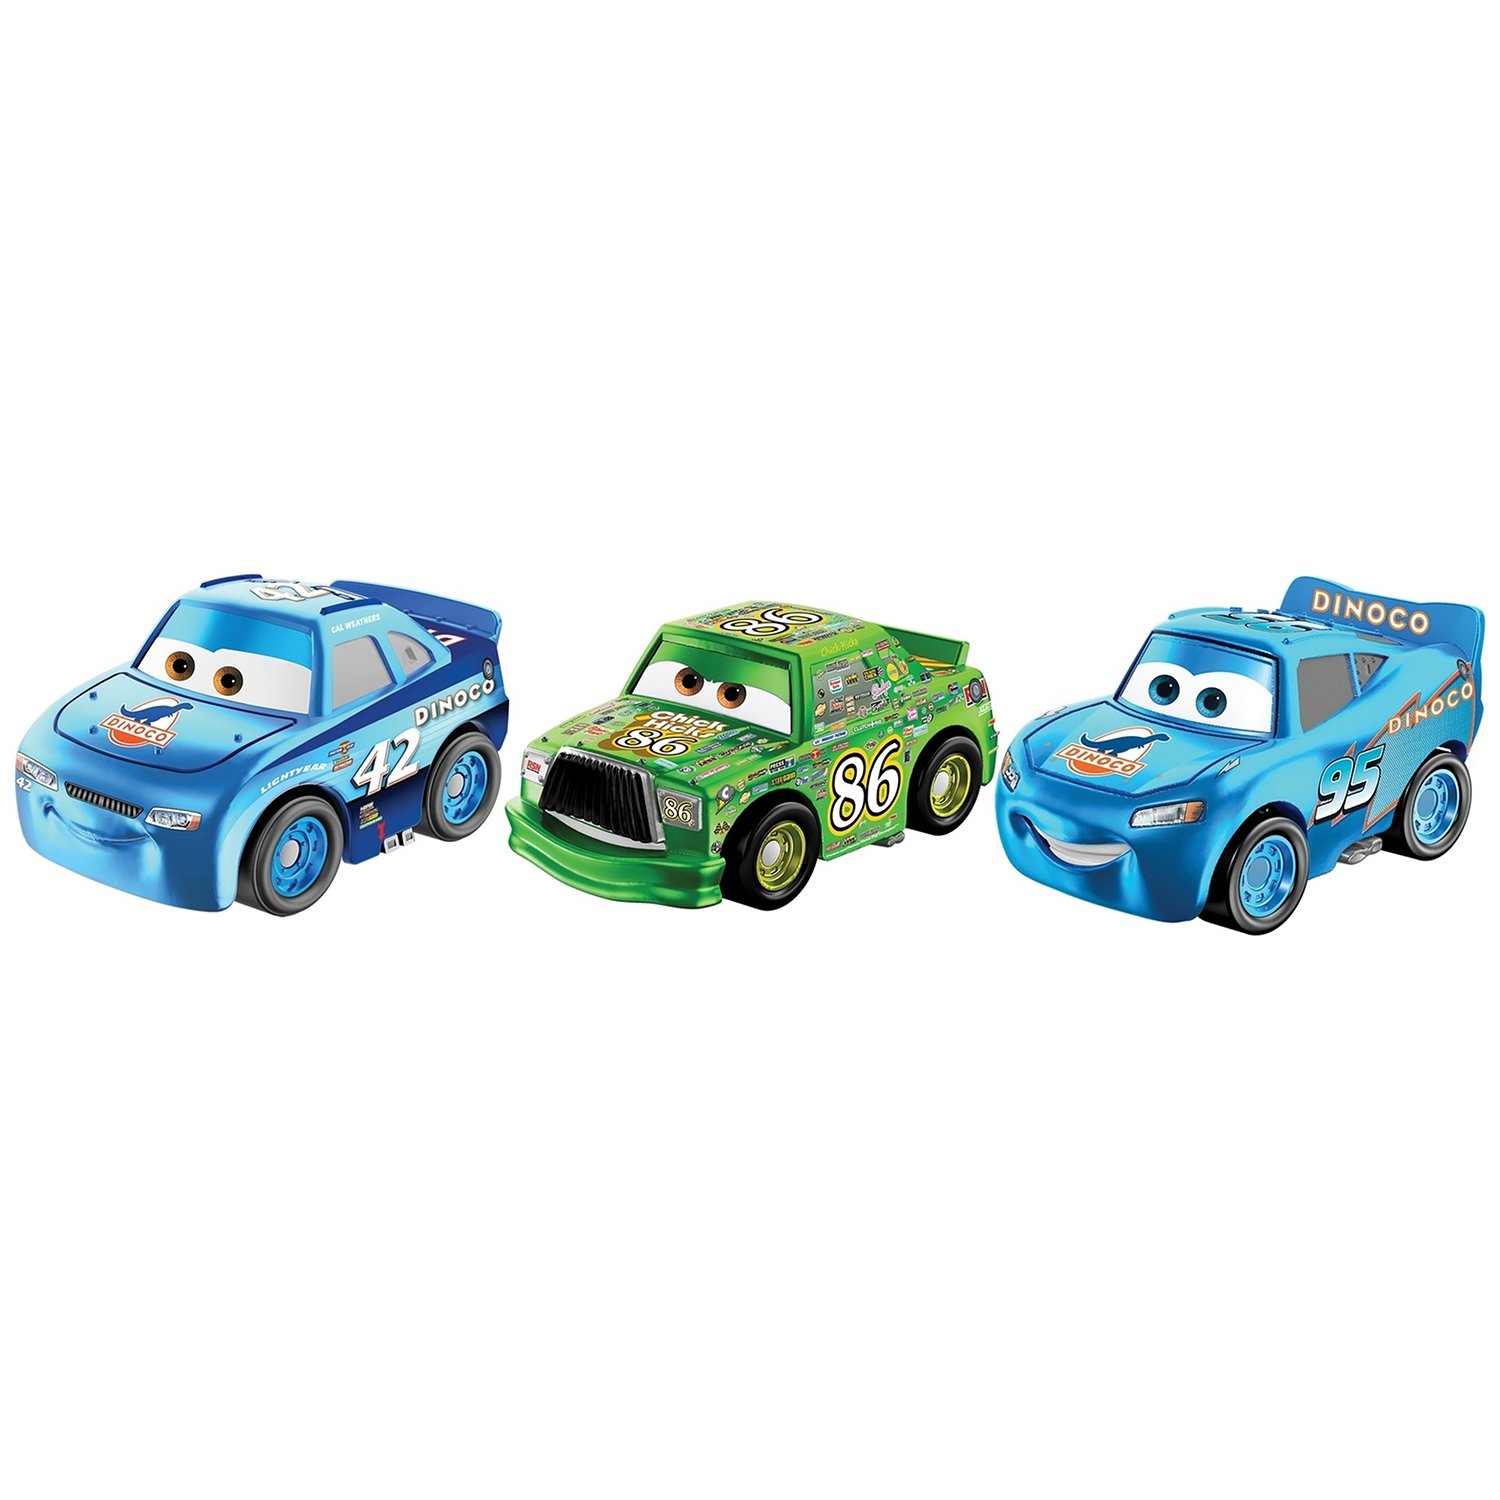 Мини тачки. Машинки Disney Pixar cars Mini. Disney Pixar cars 3 игрушки. Cars 3 Mini Racers. Набор машин Mattel cars Mini Racers.